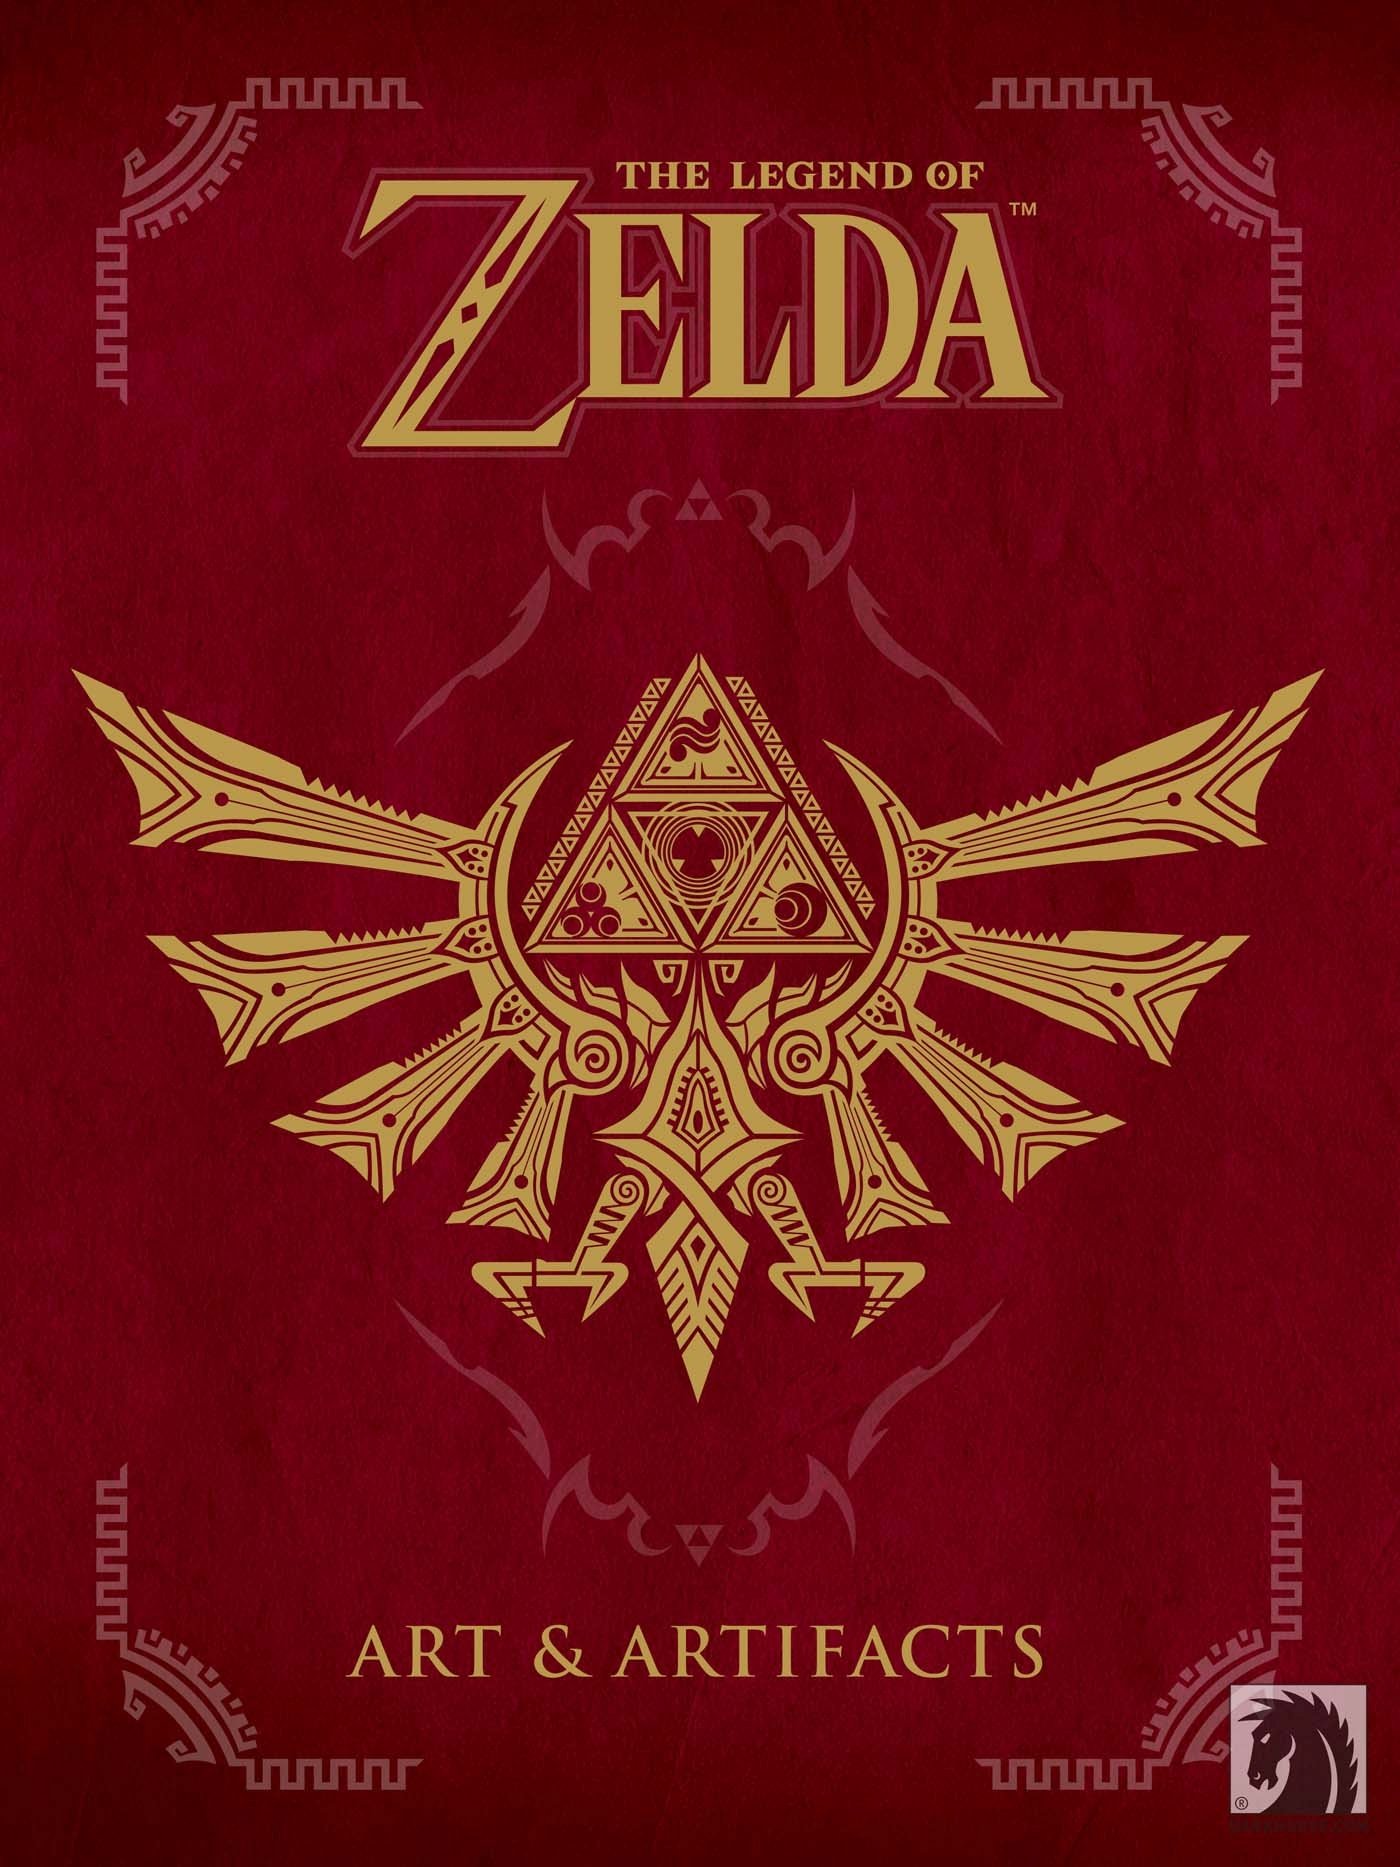 The Legend of Zelda – Art and Artifacts